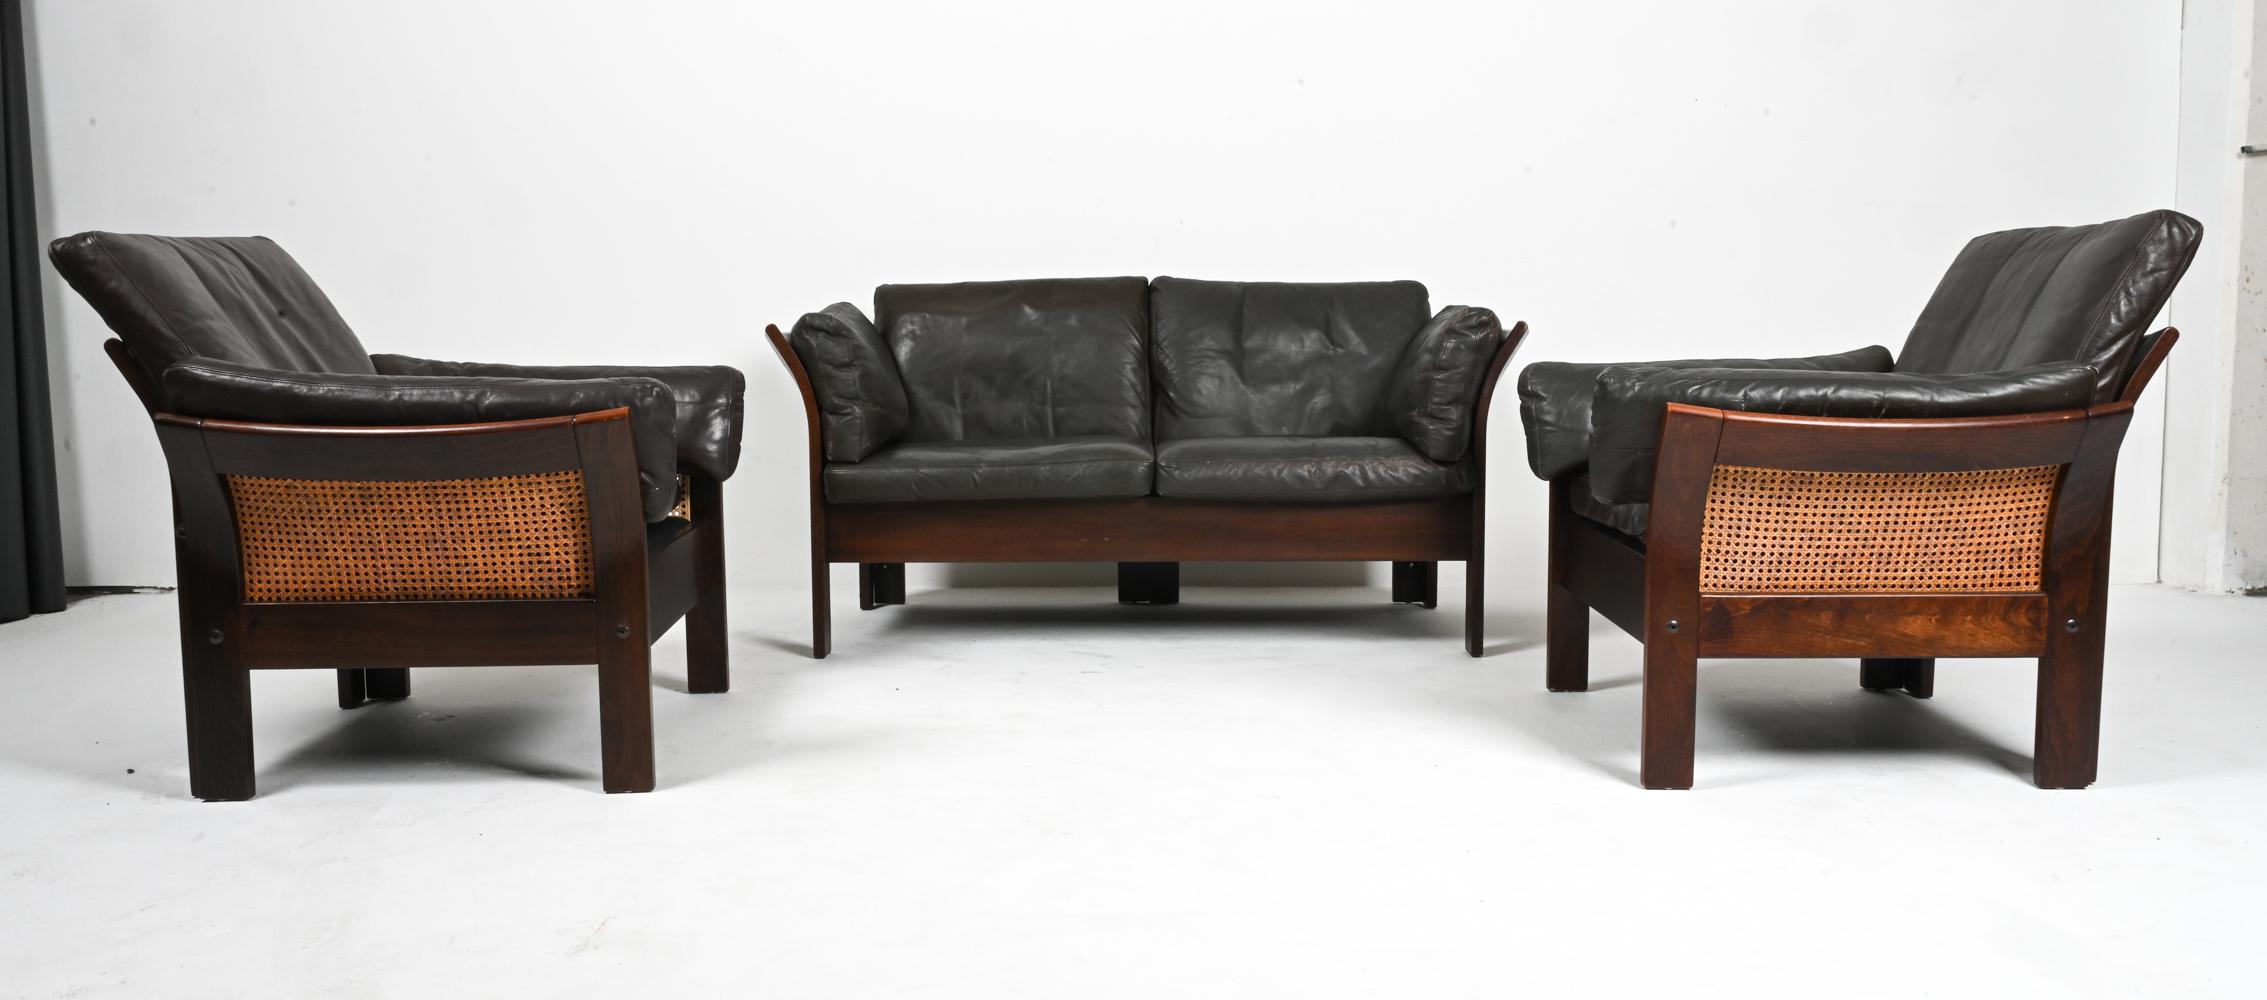 Élevez votre espace de vie avec ce magnifique ensemble de trois sièges de Vejen Polstermøbelfabrik, un fabricant danois célèbre pour son engagement envers l'artisanat et le design intemporel. Attribuée au célèbre designer Georg Thams, cette suite se